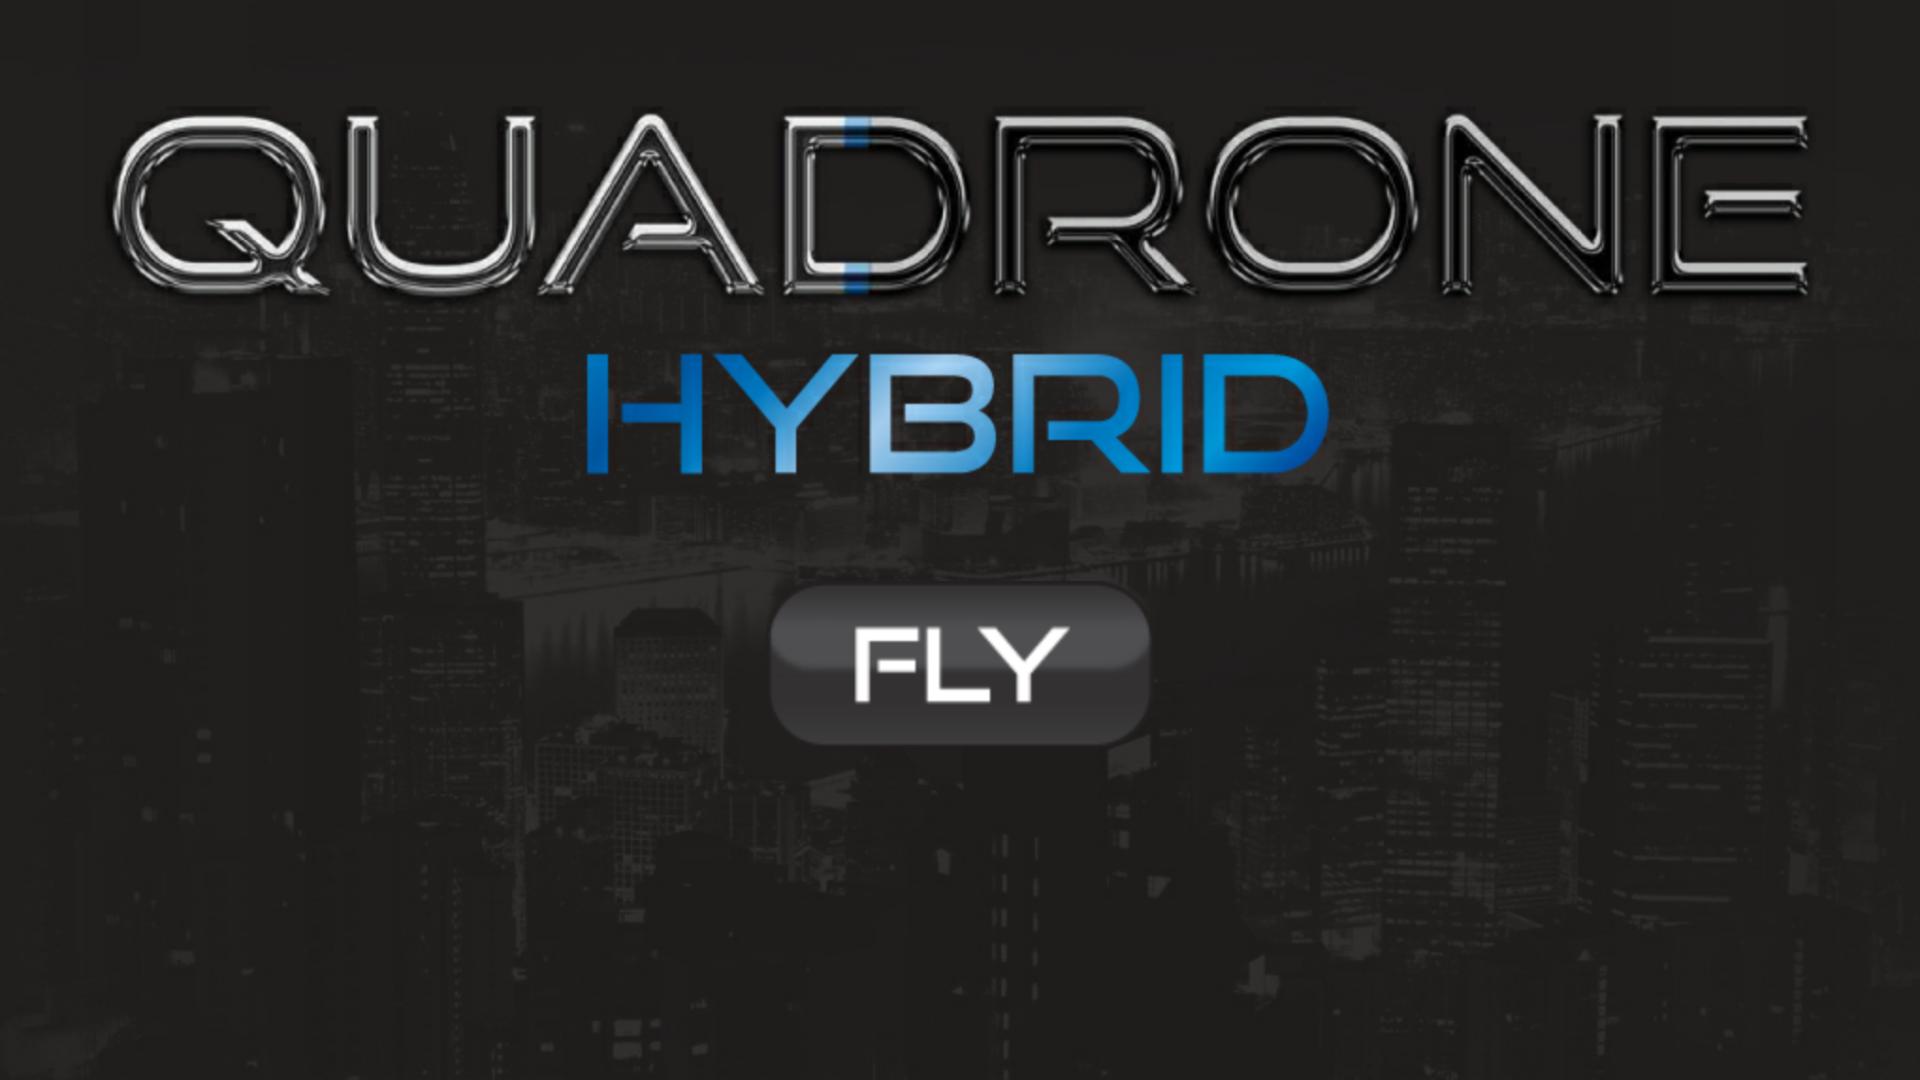 Андроид гибрид. Hybrid. Квадрон. Quadrone шрифтэ.